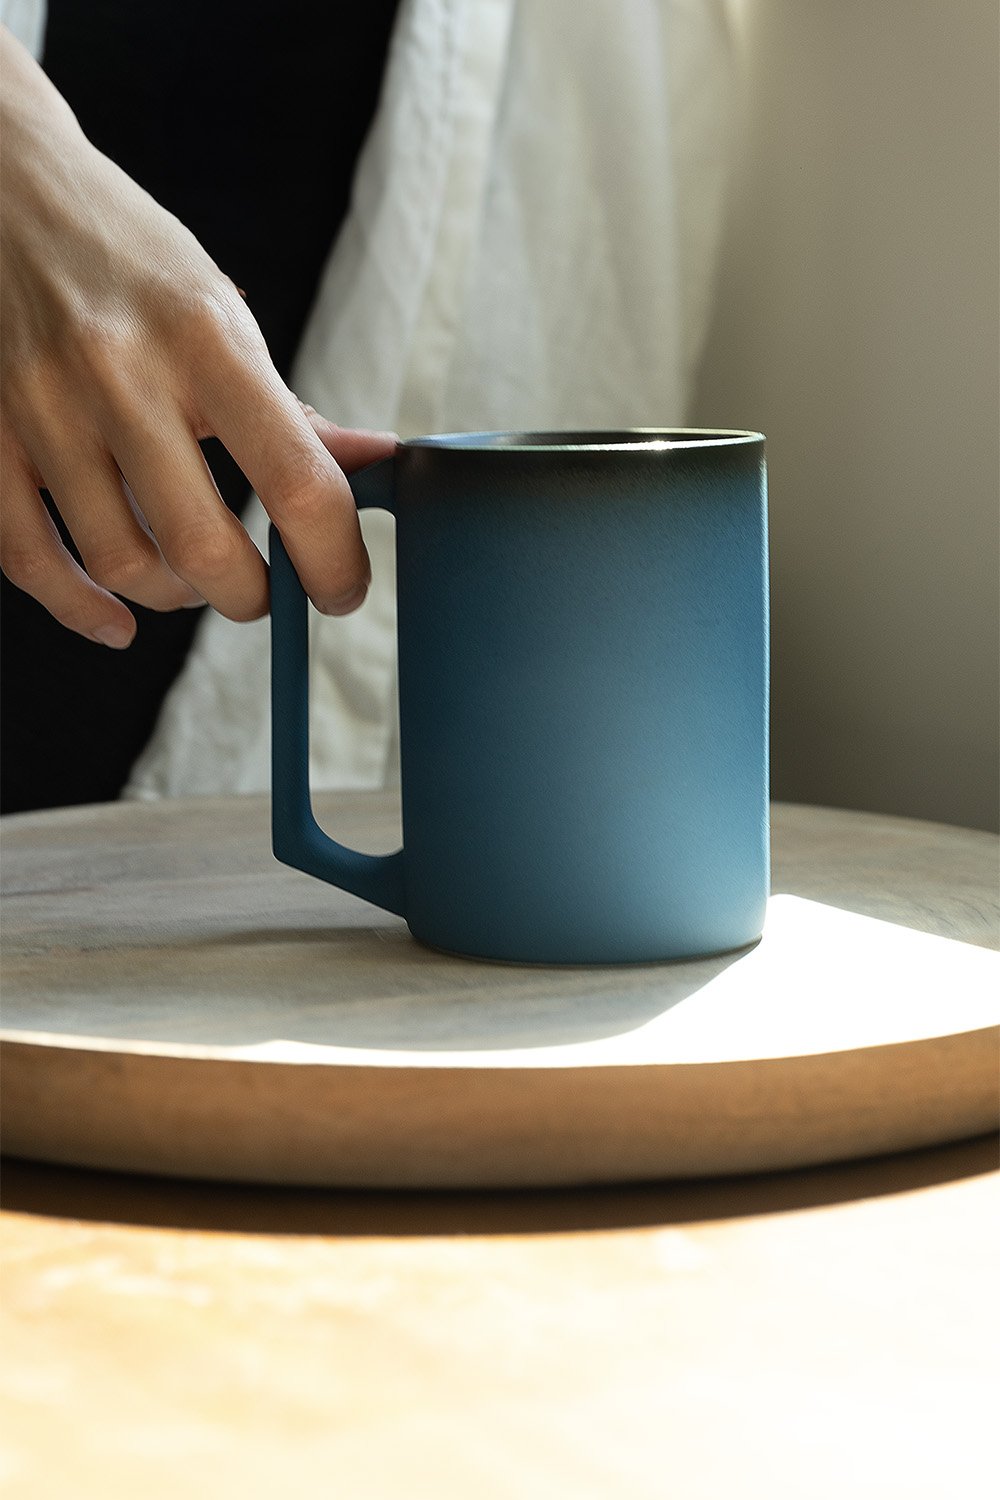 Ui Fine Ceramic Self-Heating Mug -Black Walnut, OHOM